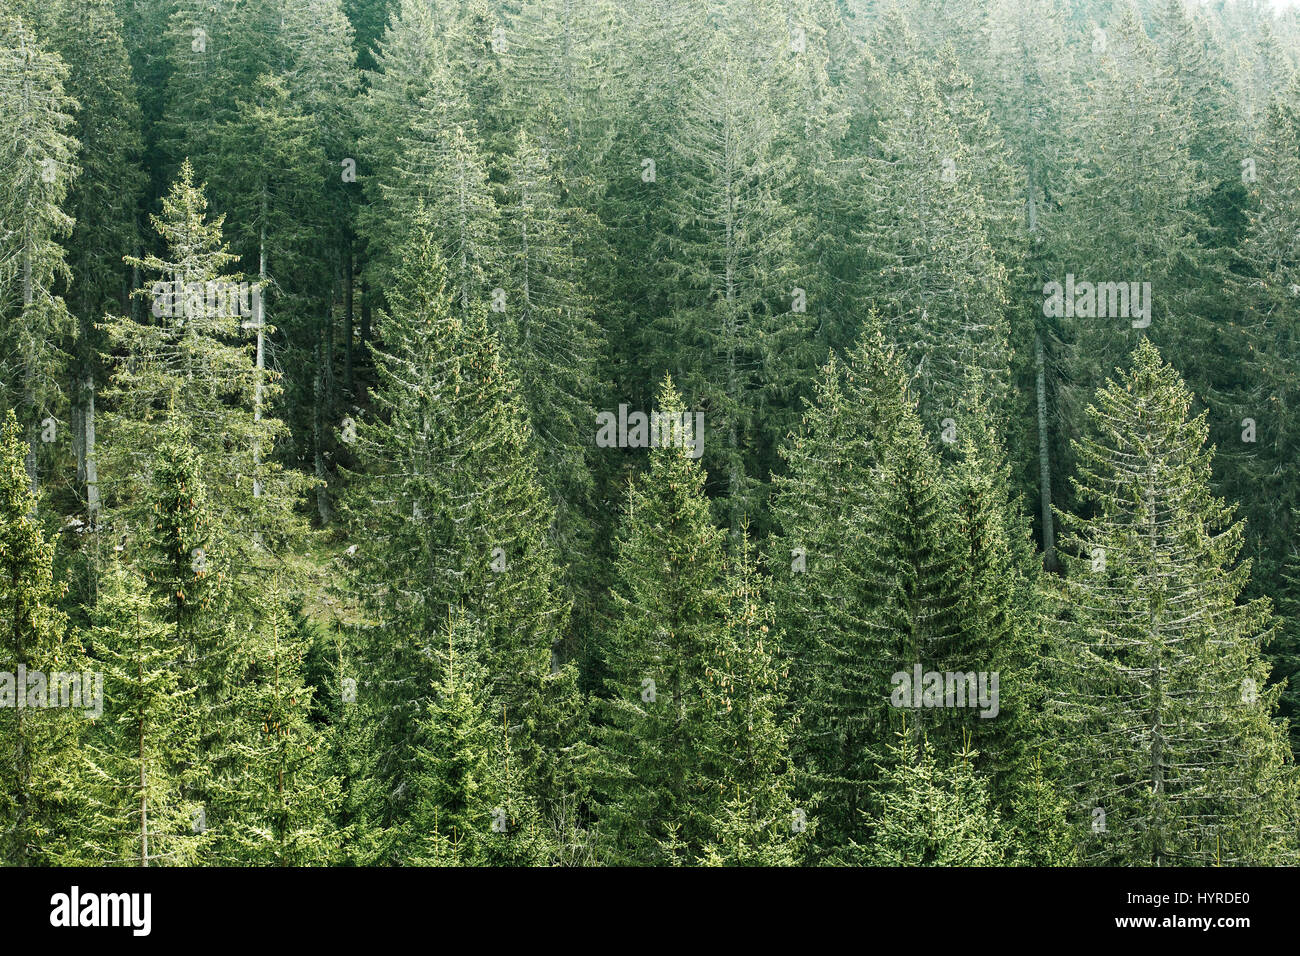 Gesunden, grünen Nadelwald mit Fichten, Tannen und Kiefern Altbaumbestand in Wildnis des Nationalparks. Nachhaltiges Wirtschaften, Ökosystem und Gesundheit Stockfoto